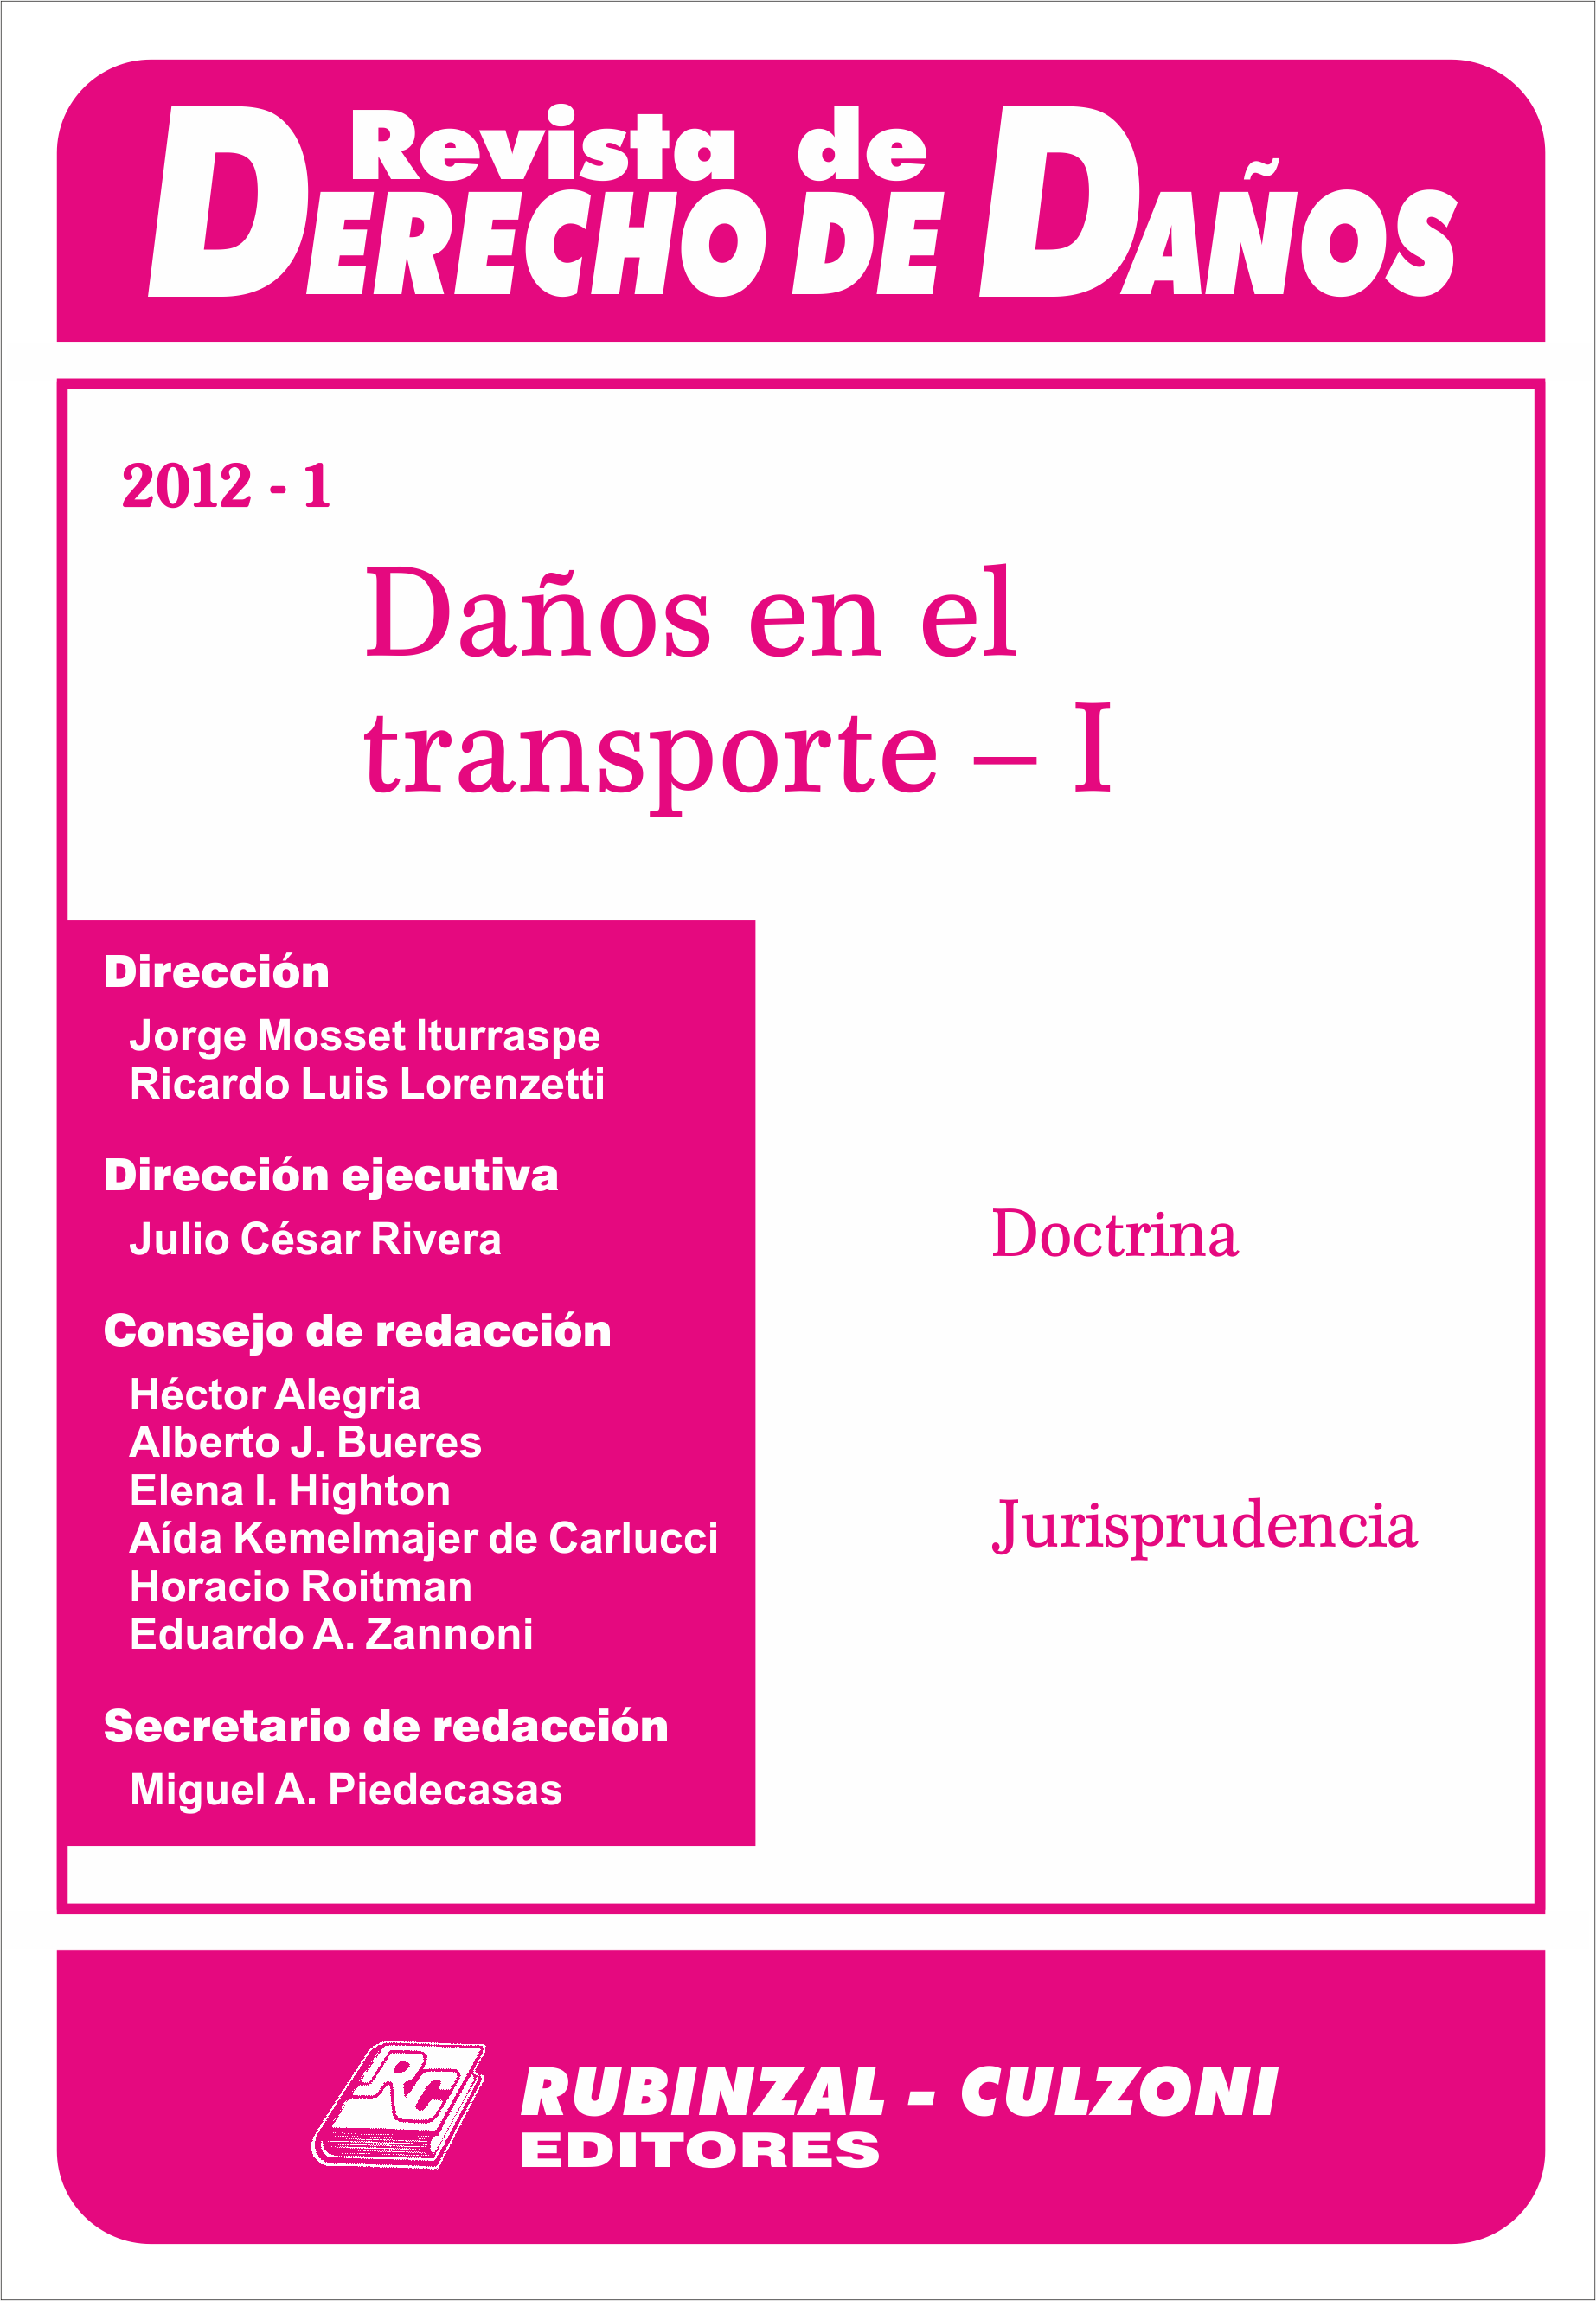 Revista de Derecho de Daños - Daños en el transporte - I